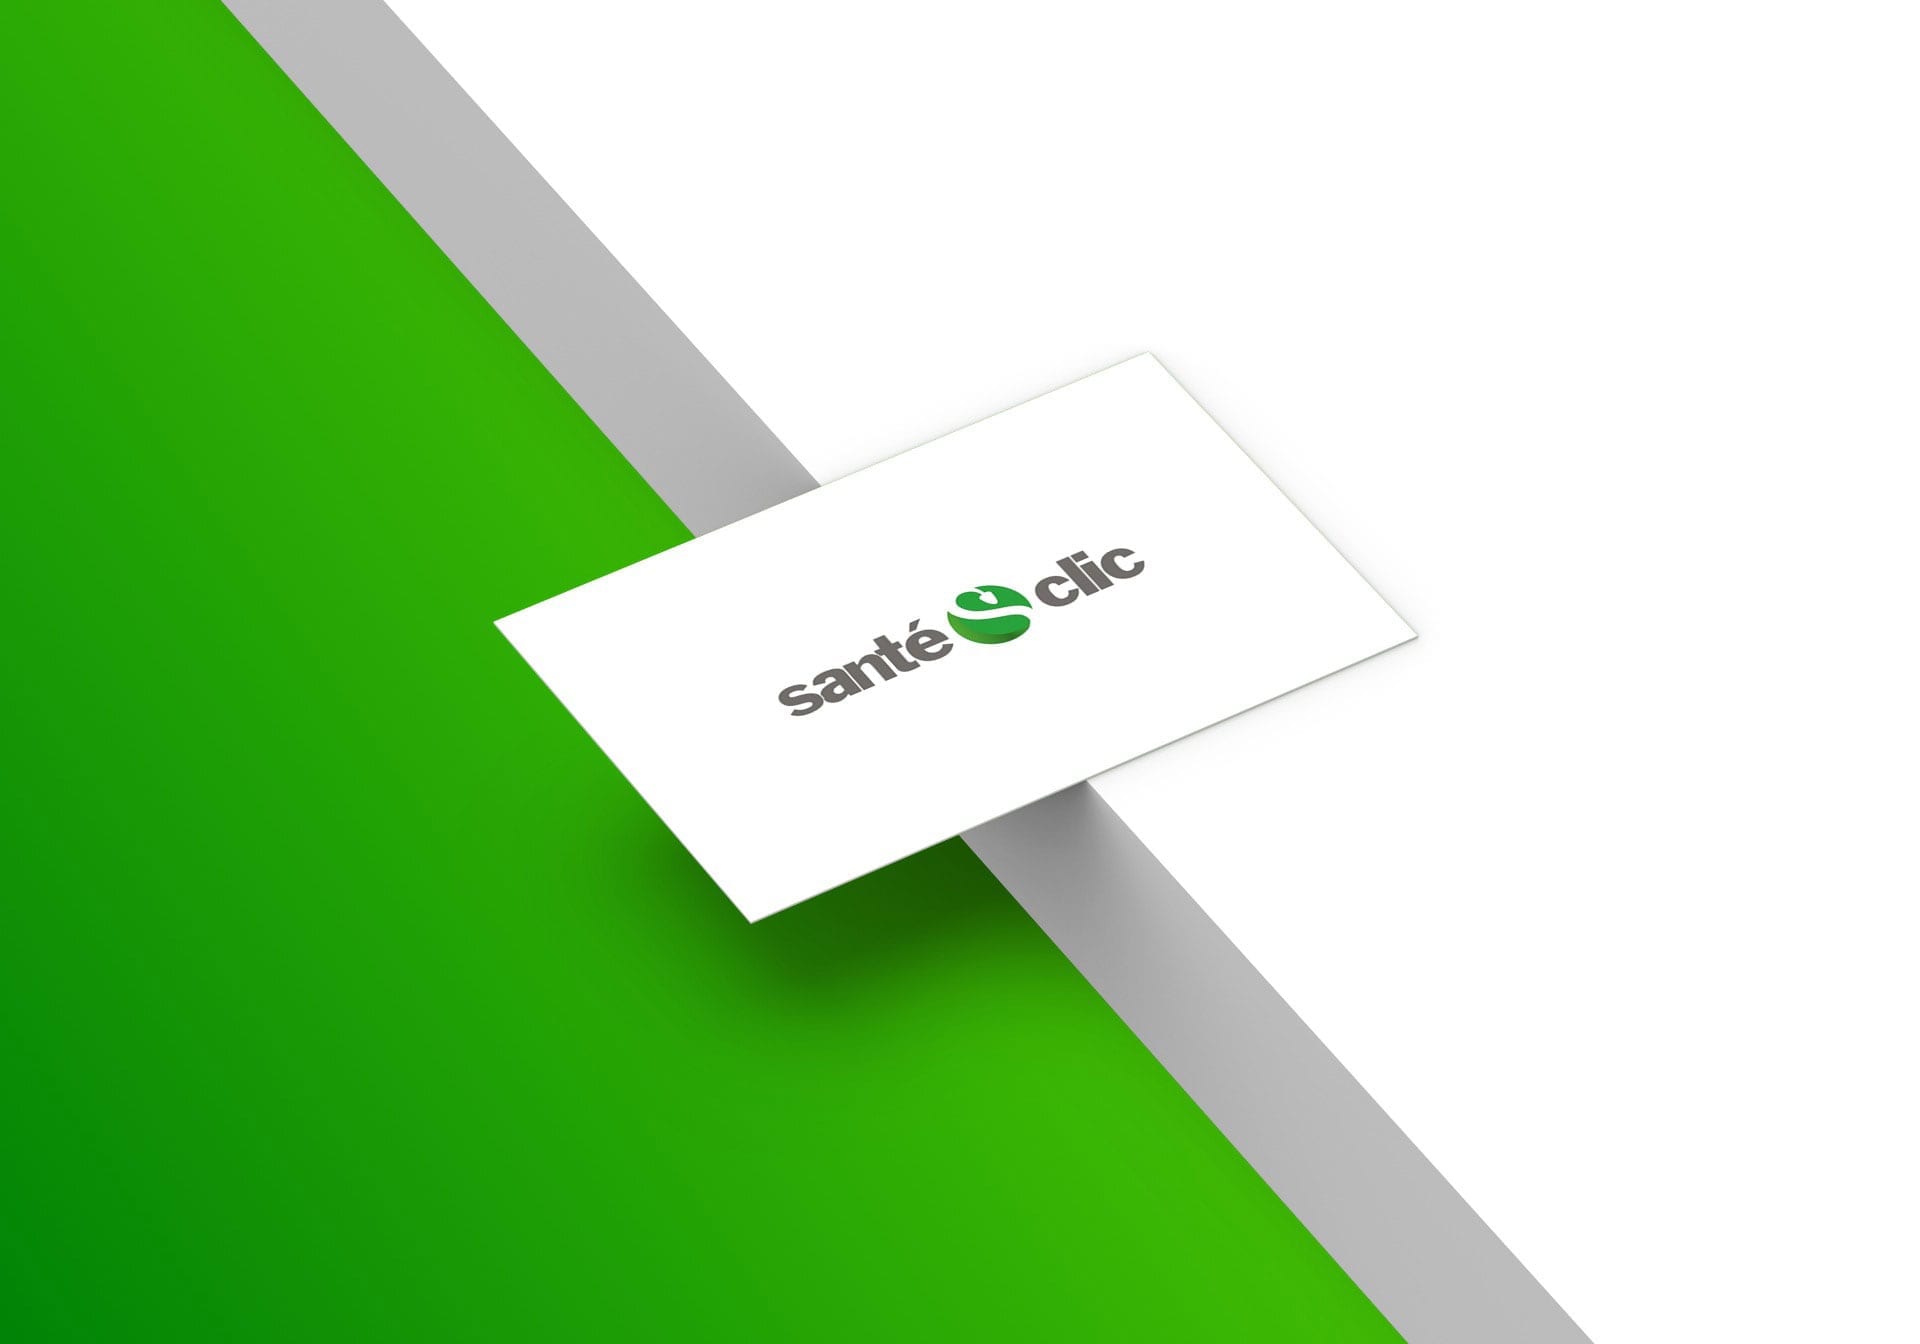 Conception du logo de SantéClic.com